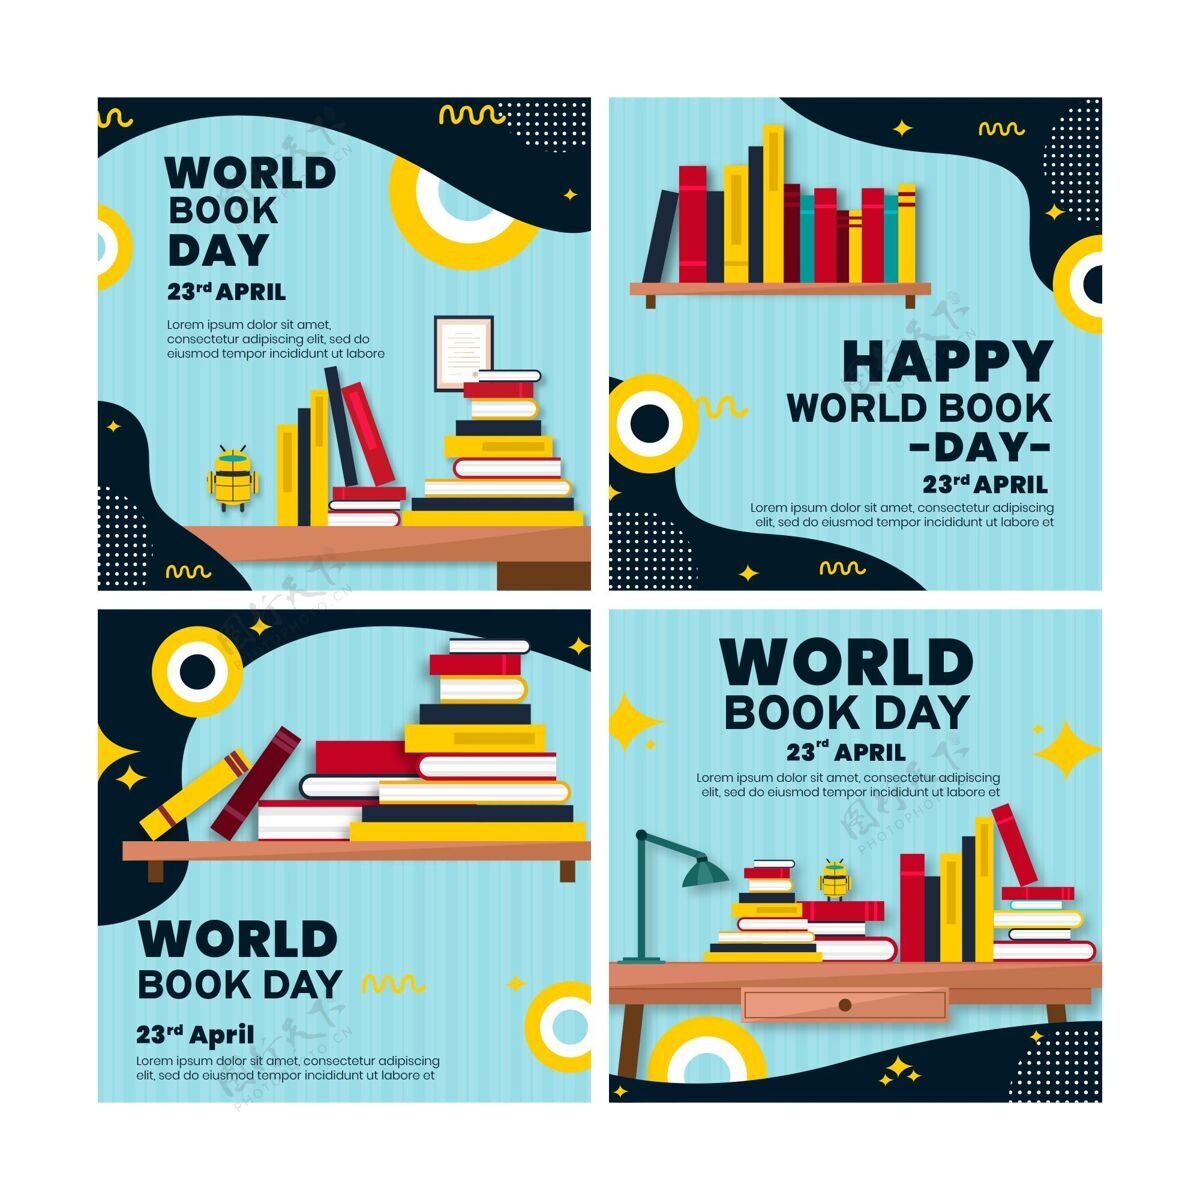 情报Instagram为世界图书日庆祝活动发布了一系列文章图书收藏4月23日